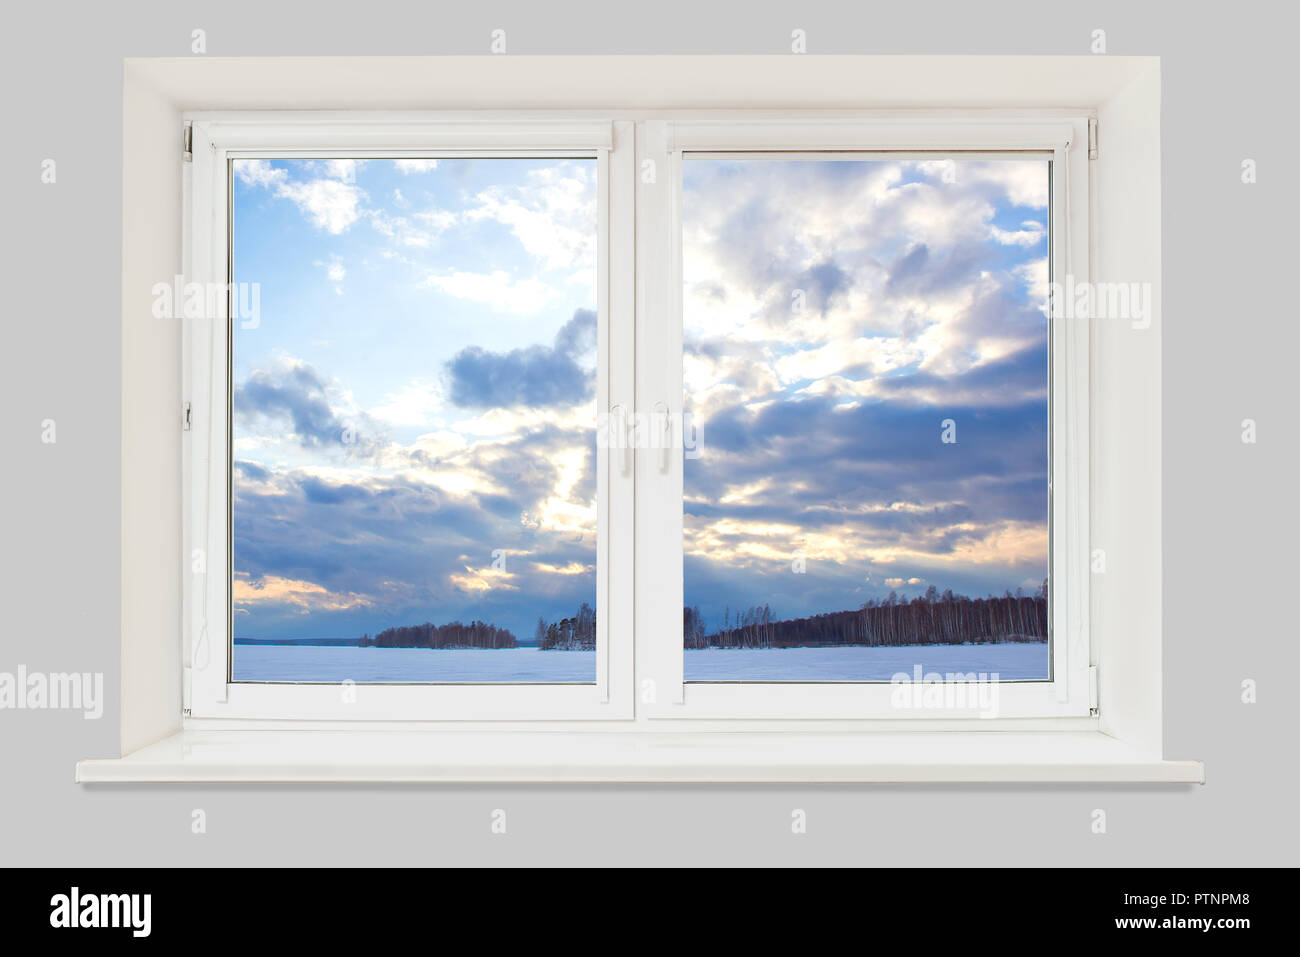 La vista dalla finestra per il paesaggio invernale con un lago ghiacciato, una foresta e una sera cielo nuvoloso Foto Stock